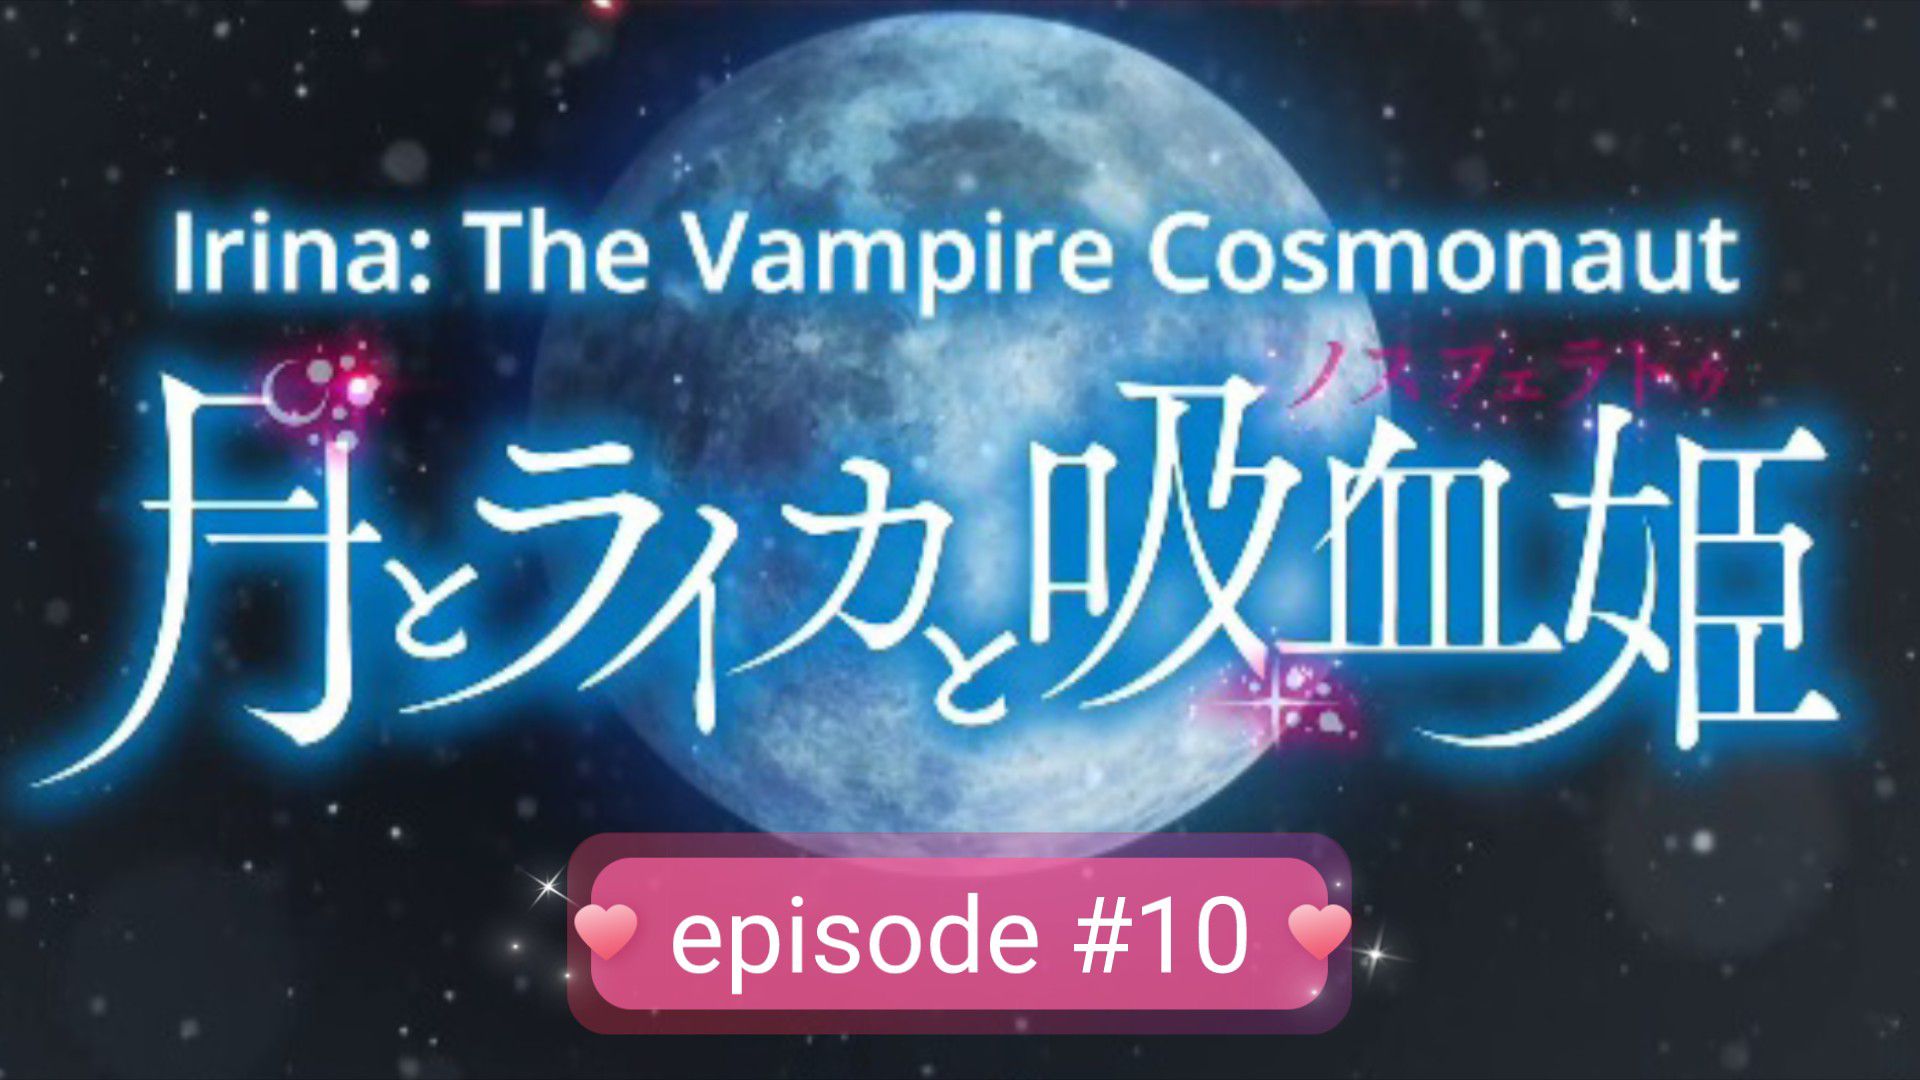 Watch Irina: The Vampire Cosmonaut season 1 episode 10 streaming online